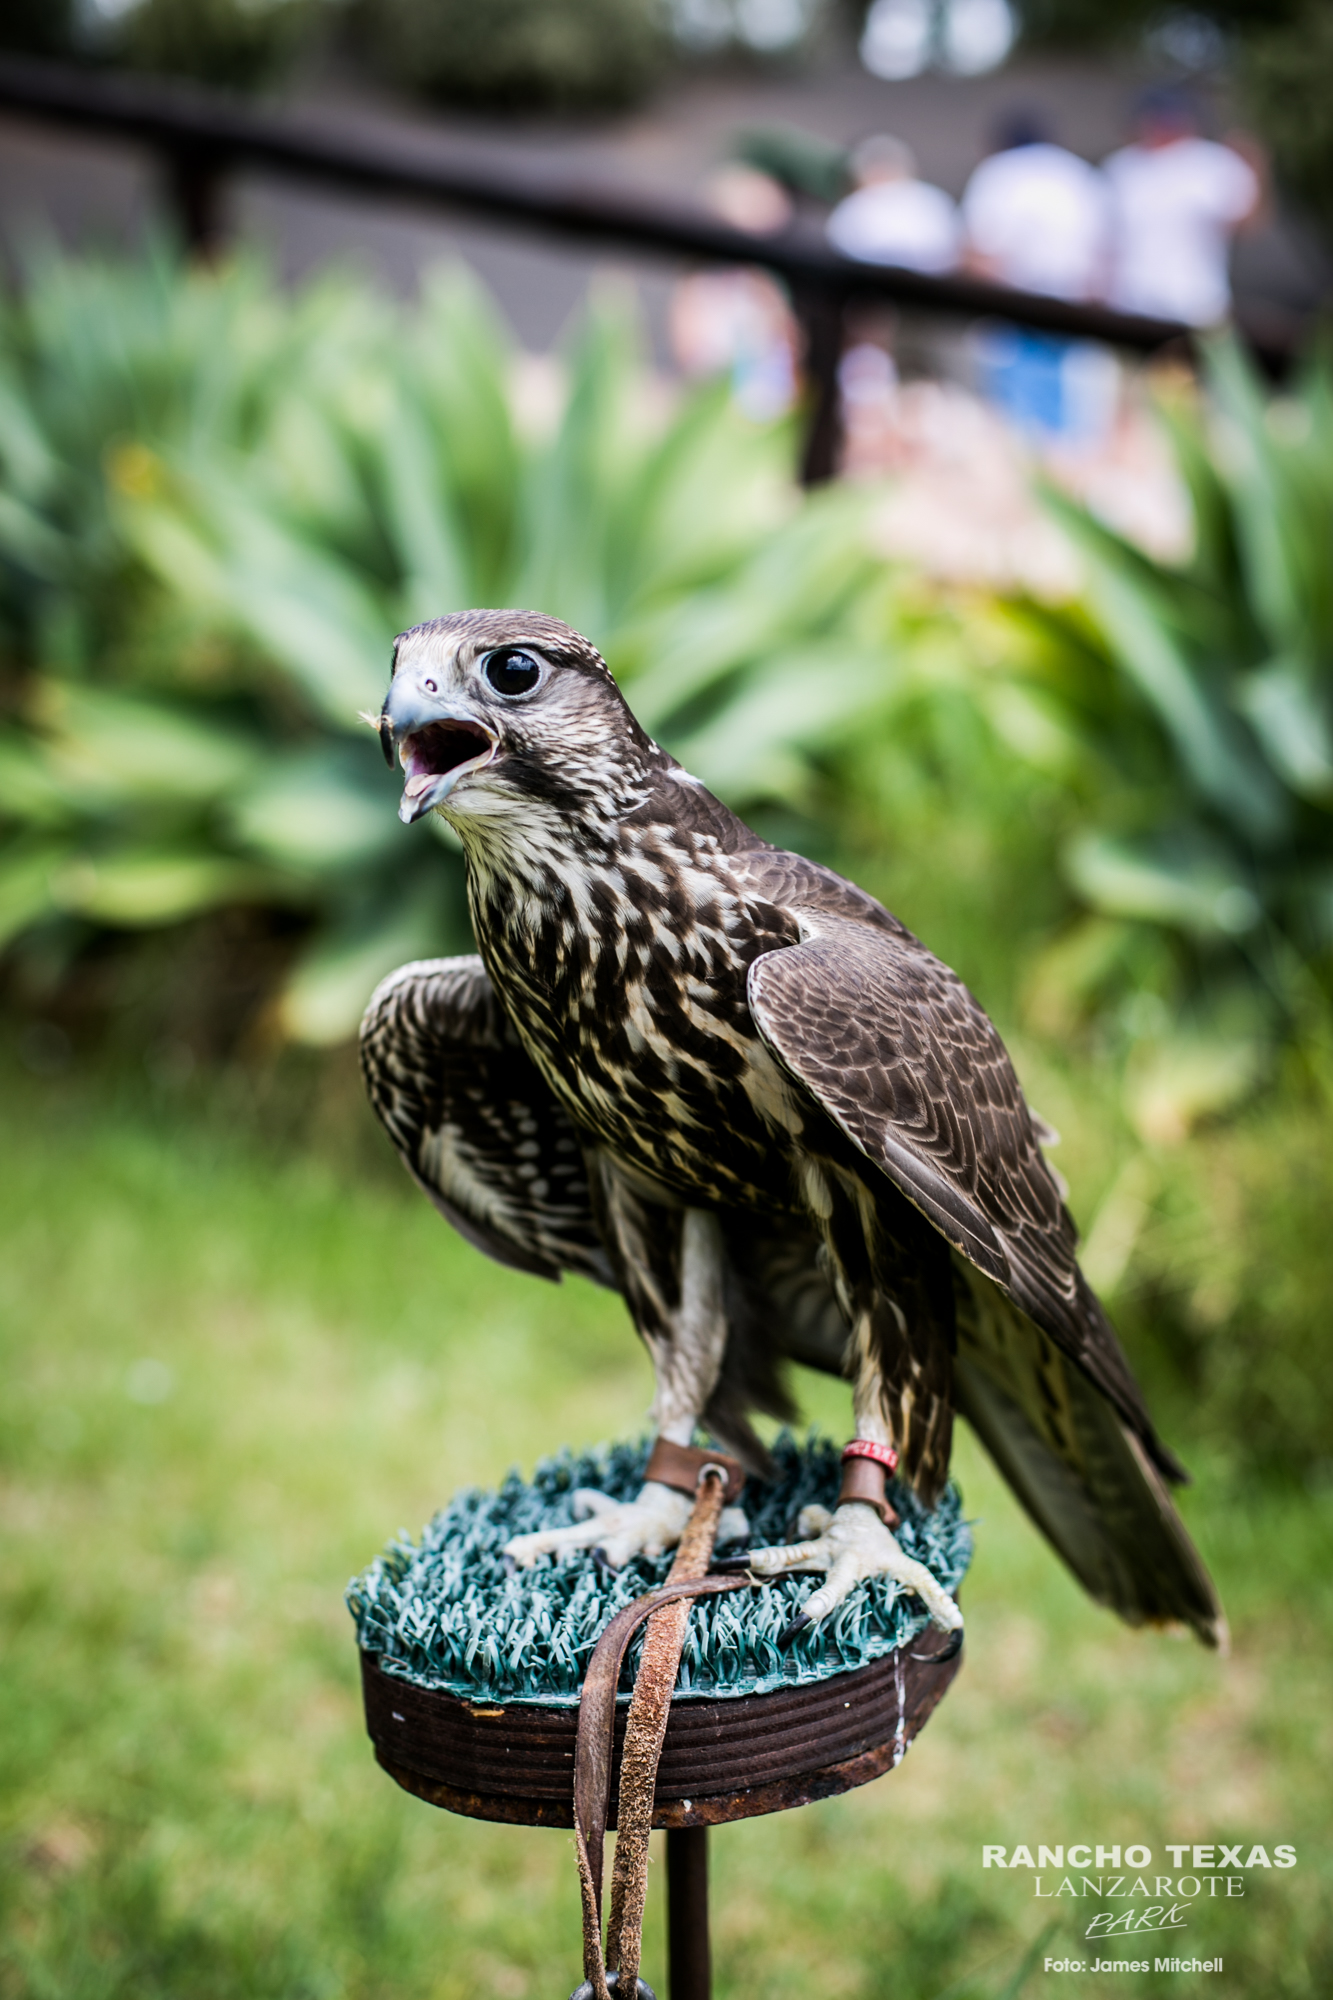 The saker falcon